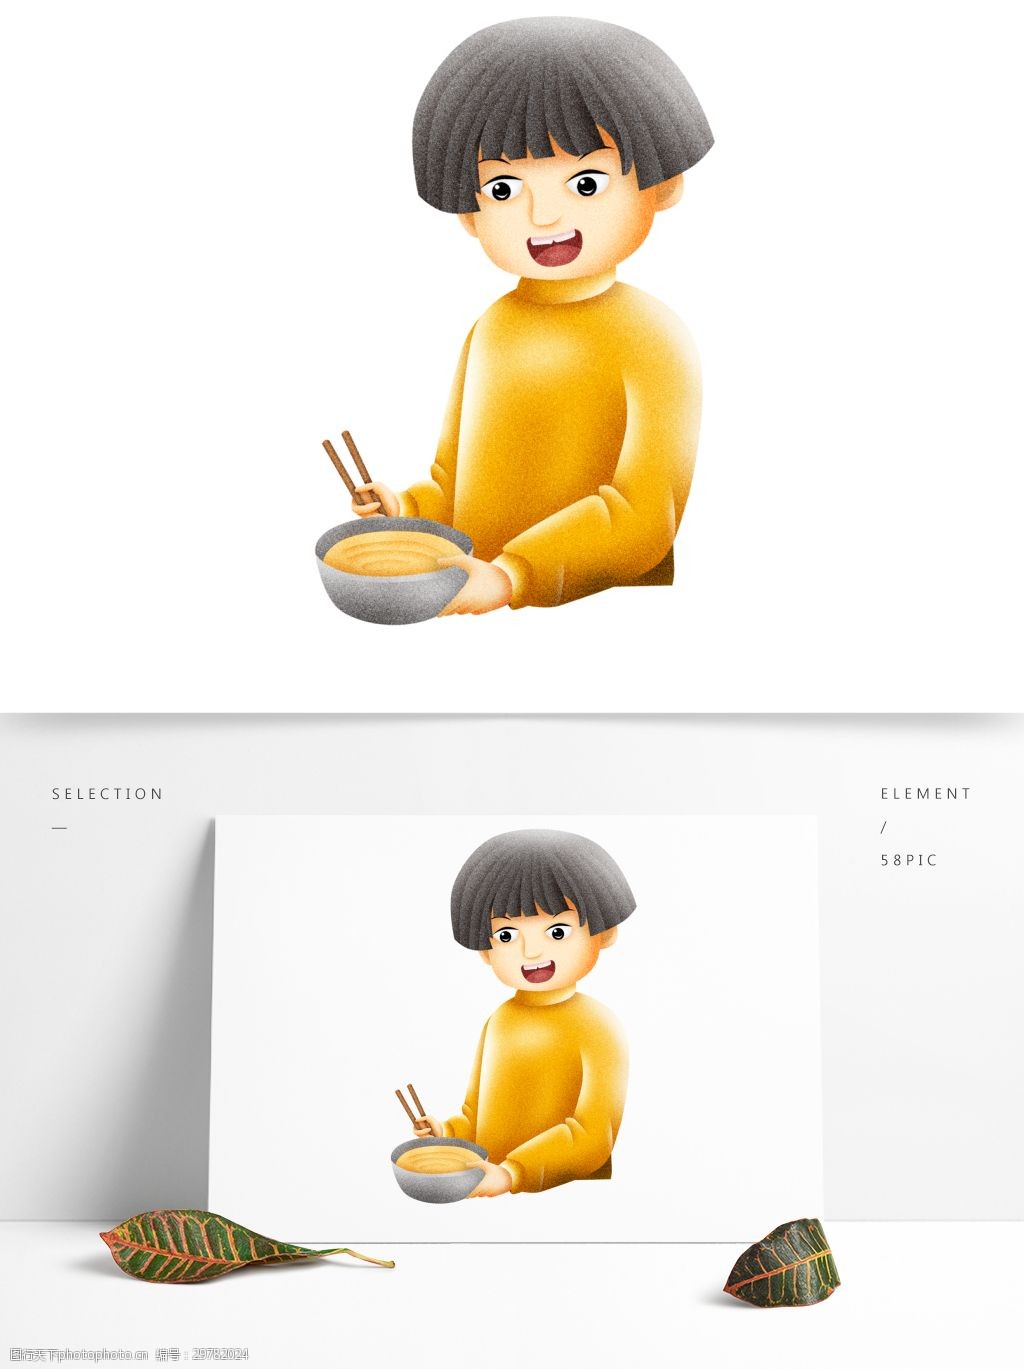 关键词:拿着碗和筷子的男孩可商用元素 可爱 卡通 插画 筷子 碗 锅盖